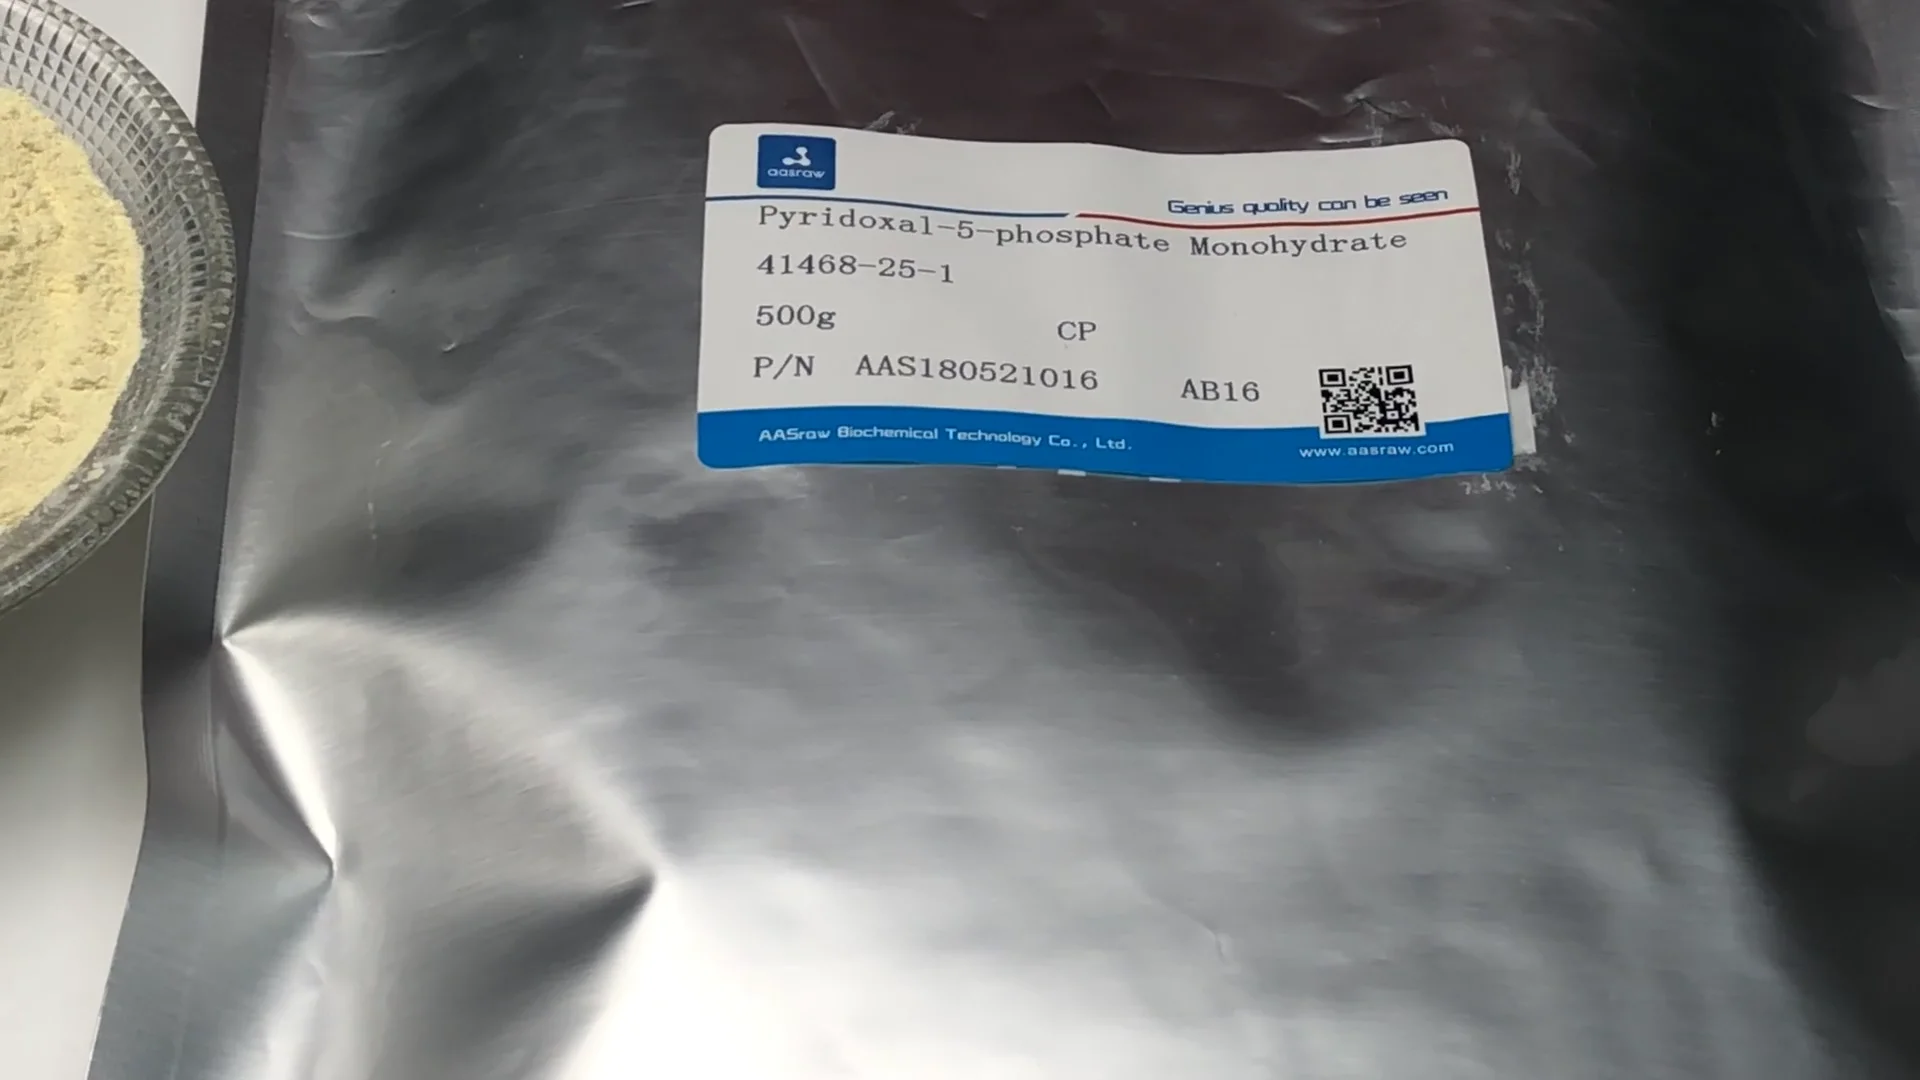 17722 ПІРИДОКСАЛ-5-ФОСФАТ - Pyridoxal phosphate